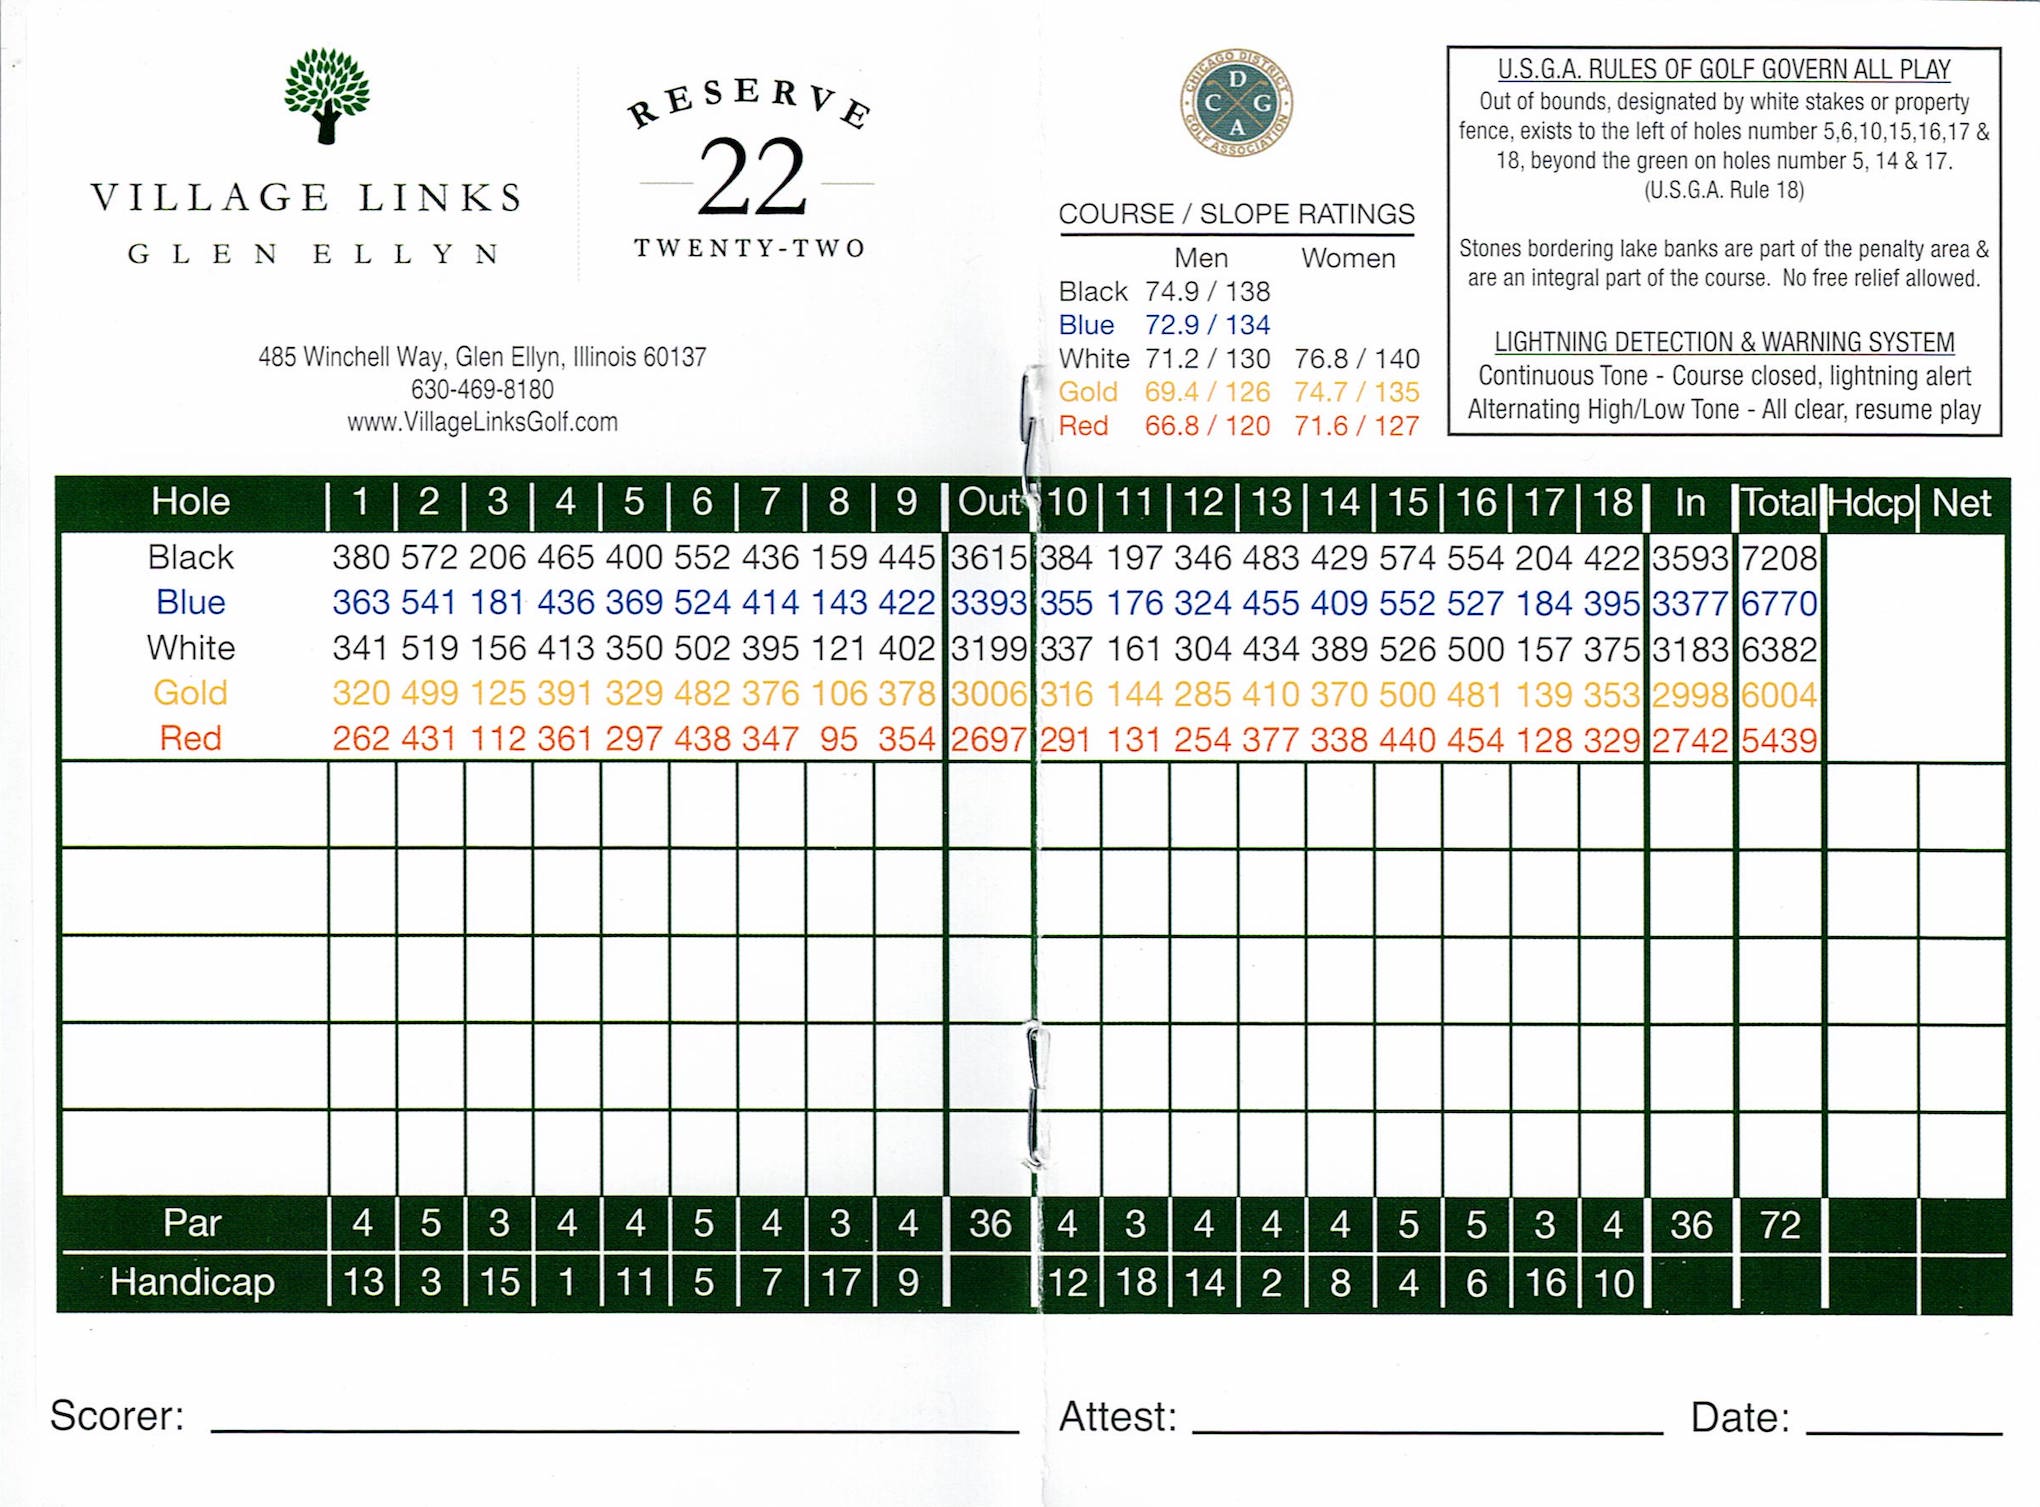 Scan of the scorecard from Village Links of Glen Ellyn - 18 Hole Course in Glen Ellyn, Illinois. 